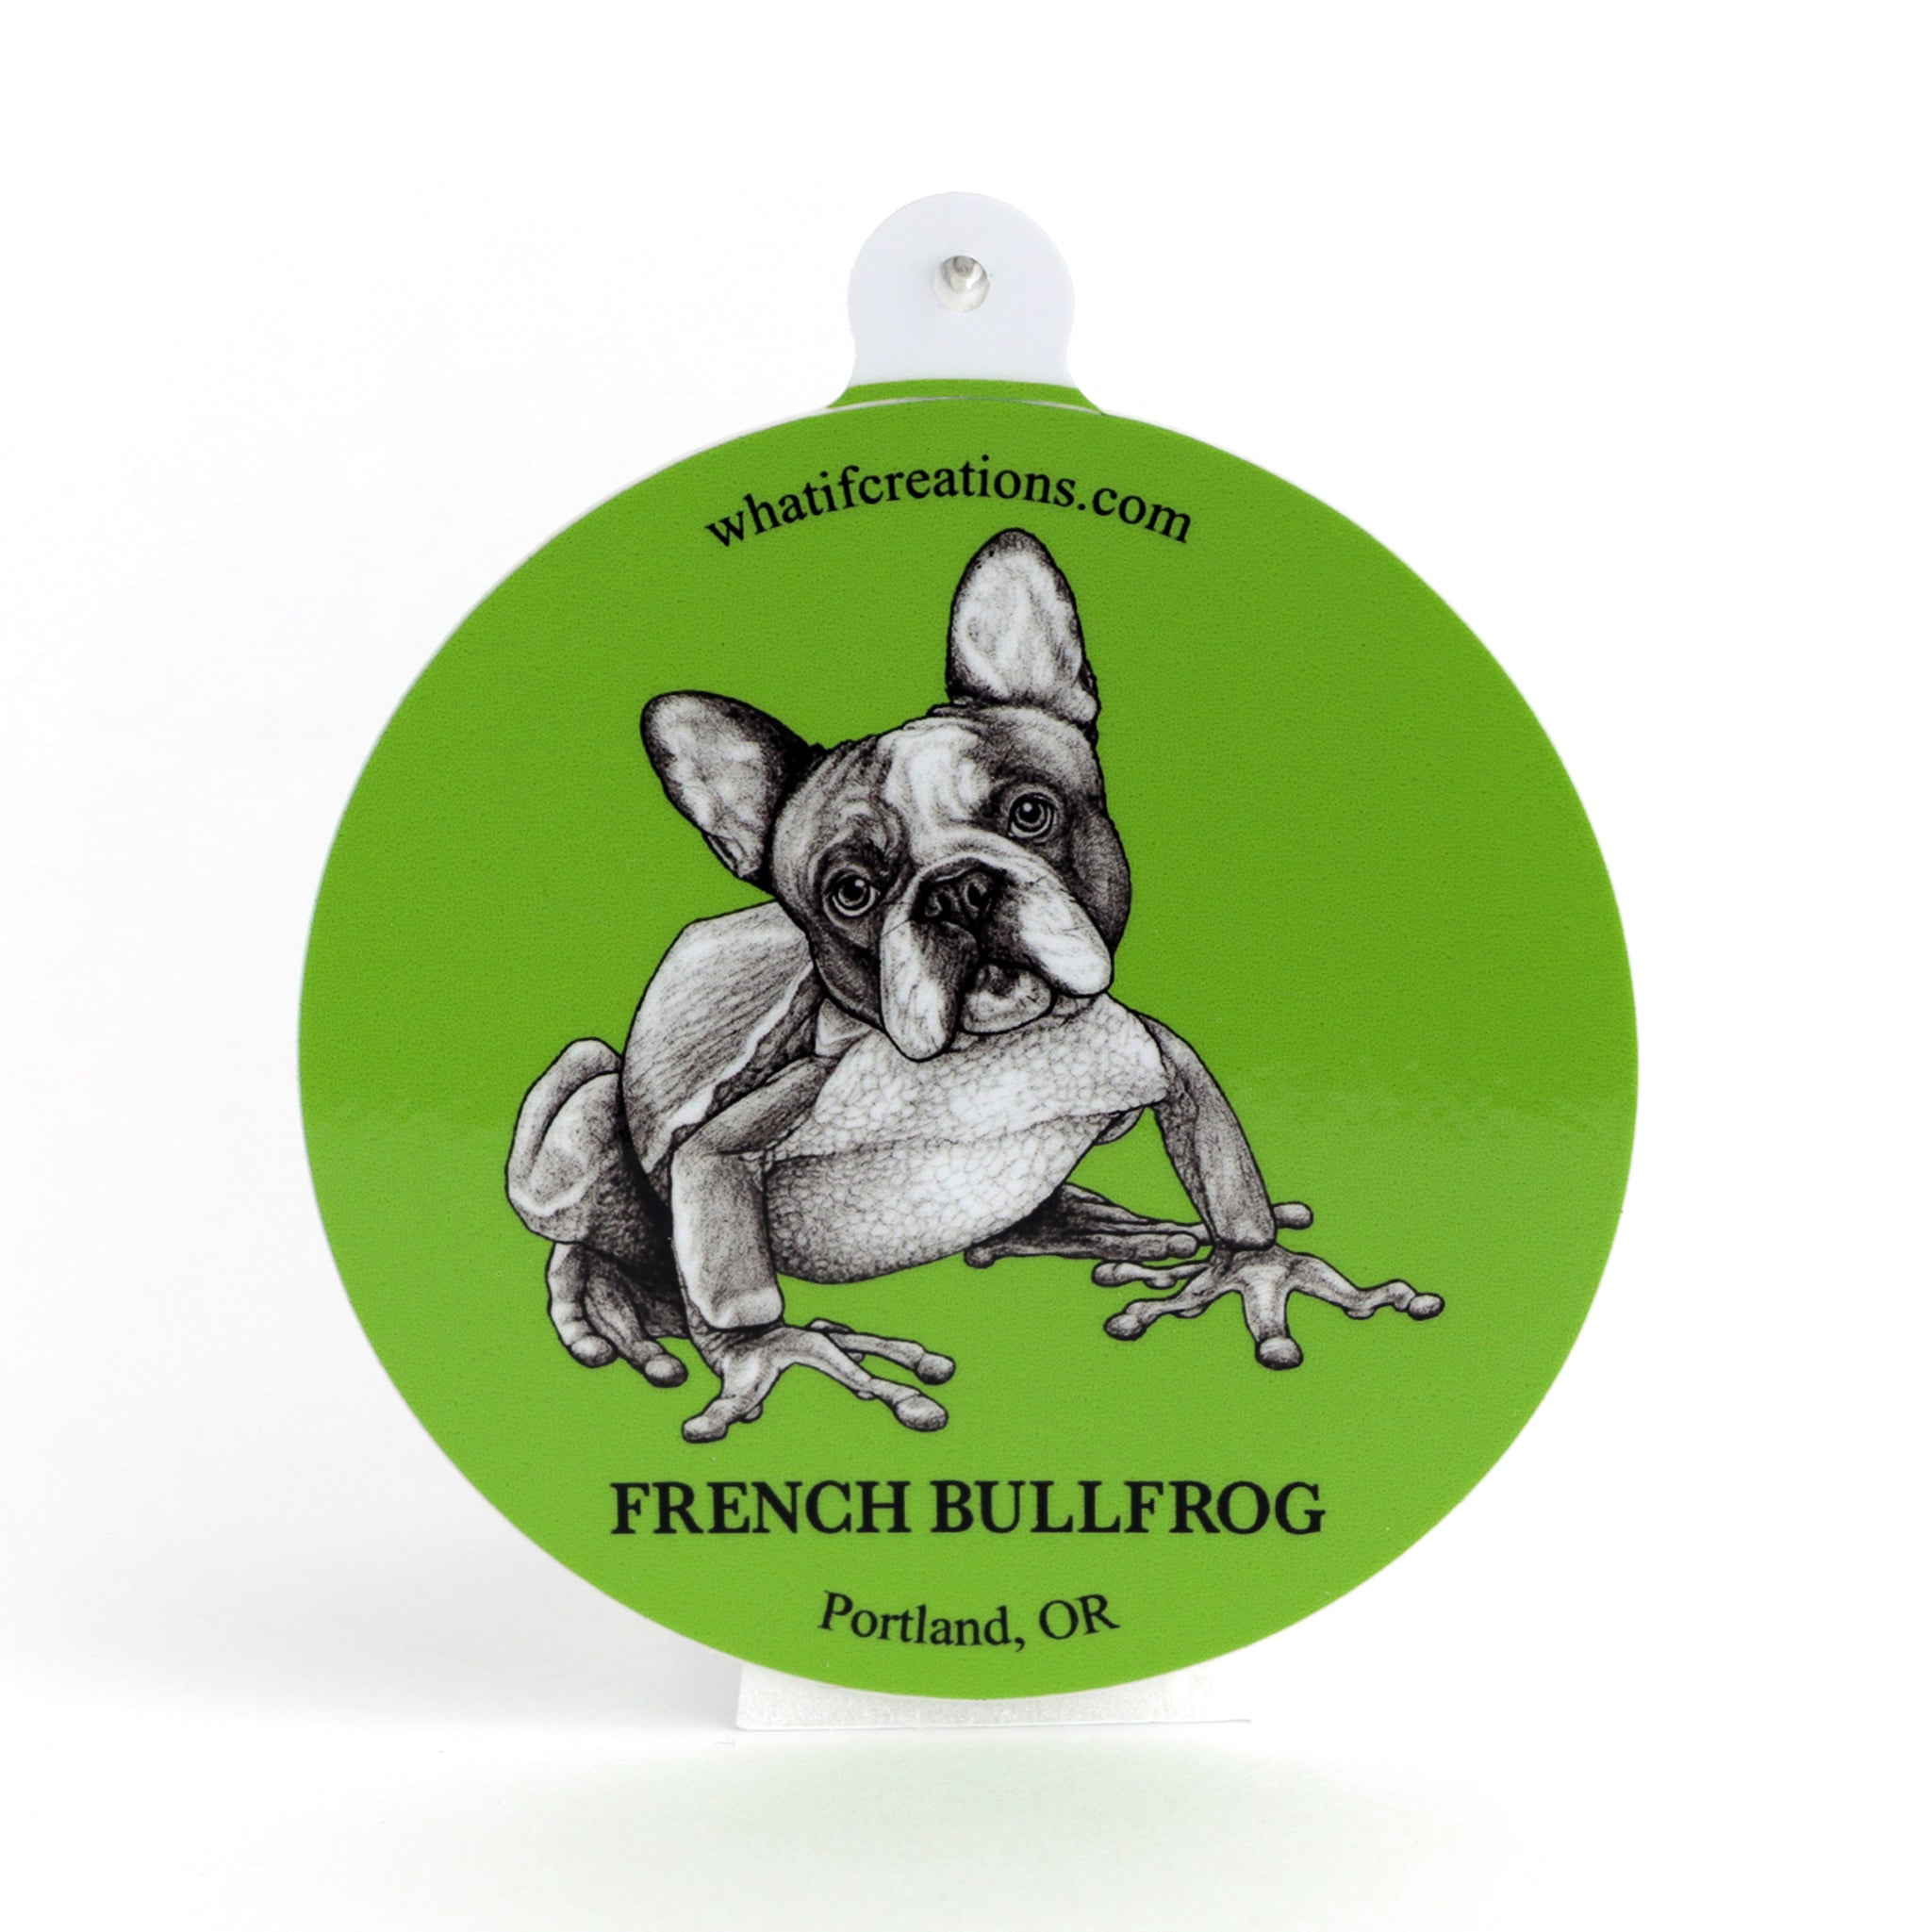 French Bullfrog | French Bulldog + Frog Hybrid Animal | 3" Vinyl Sticker